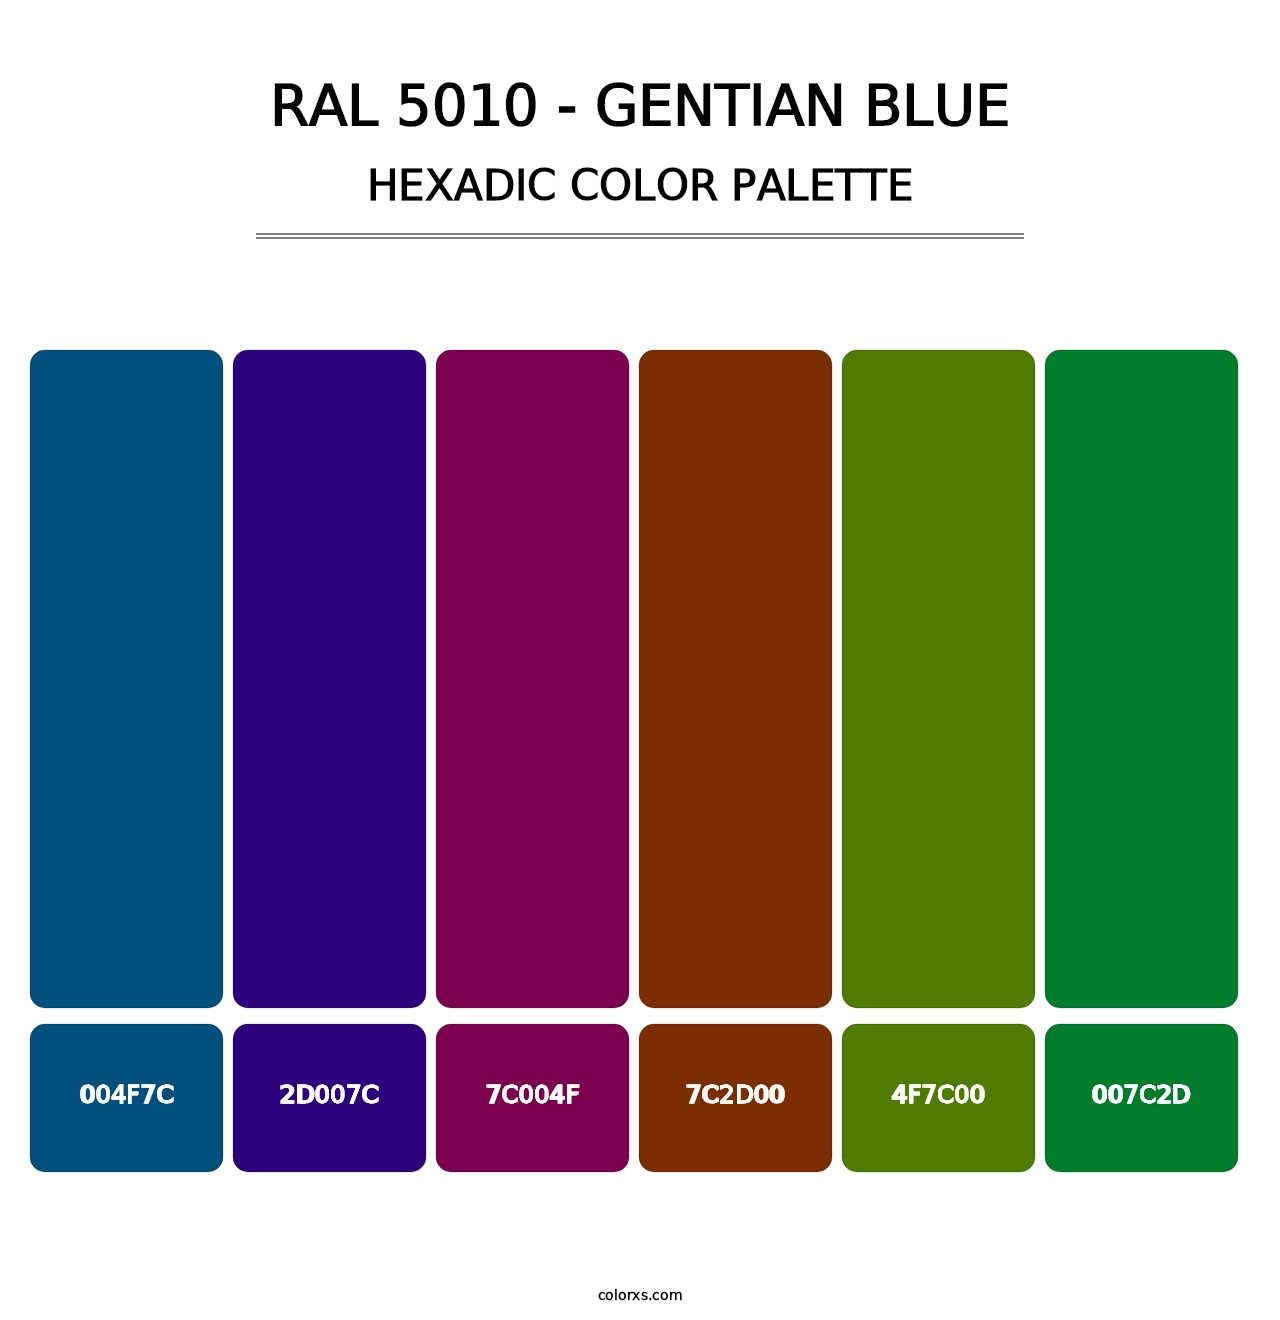 RAL 5010 - Gentian Blue - Hexadic Color Palette